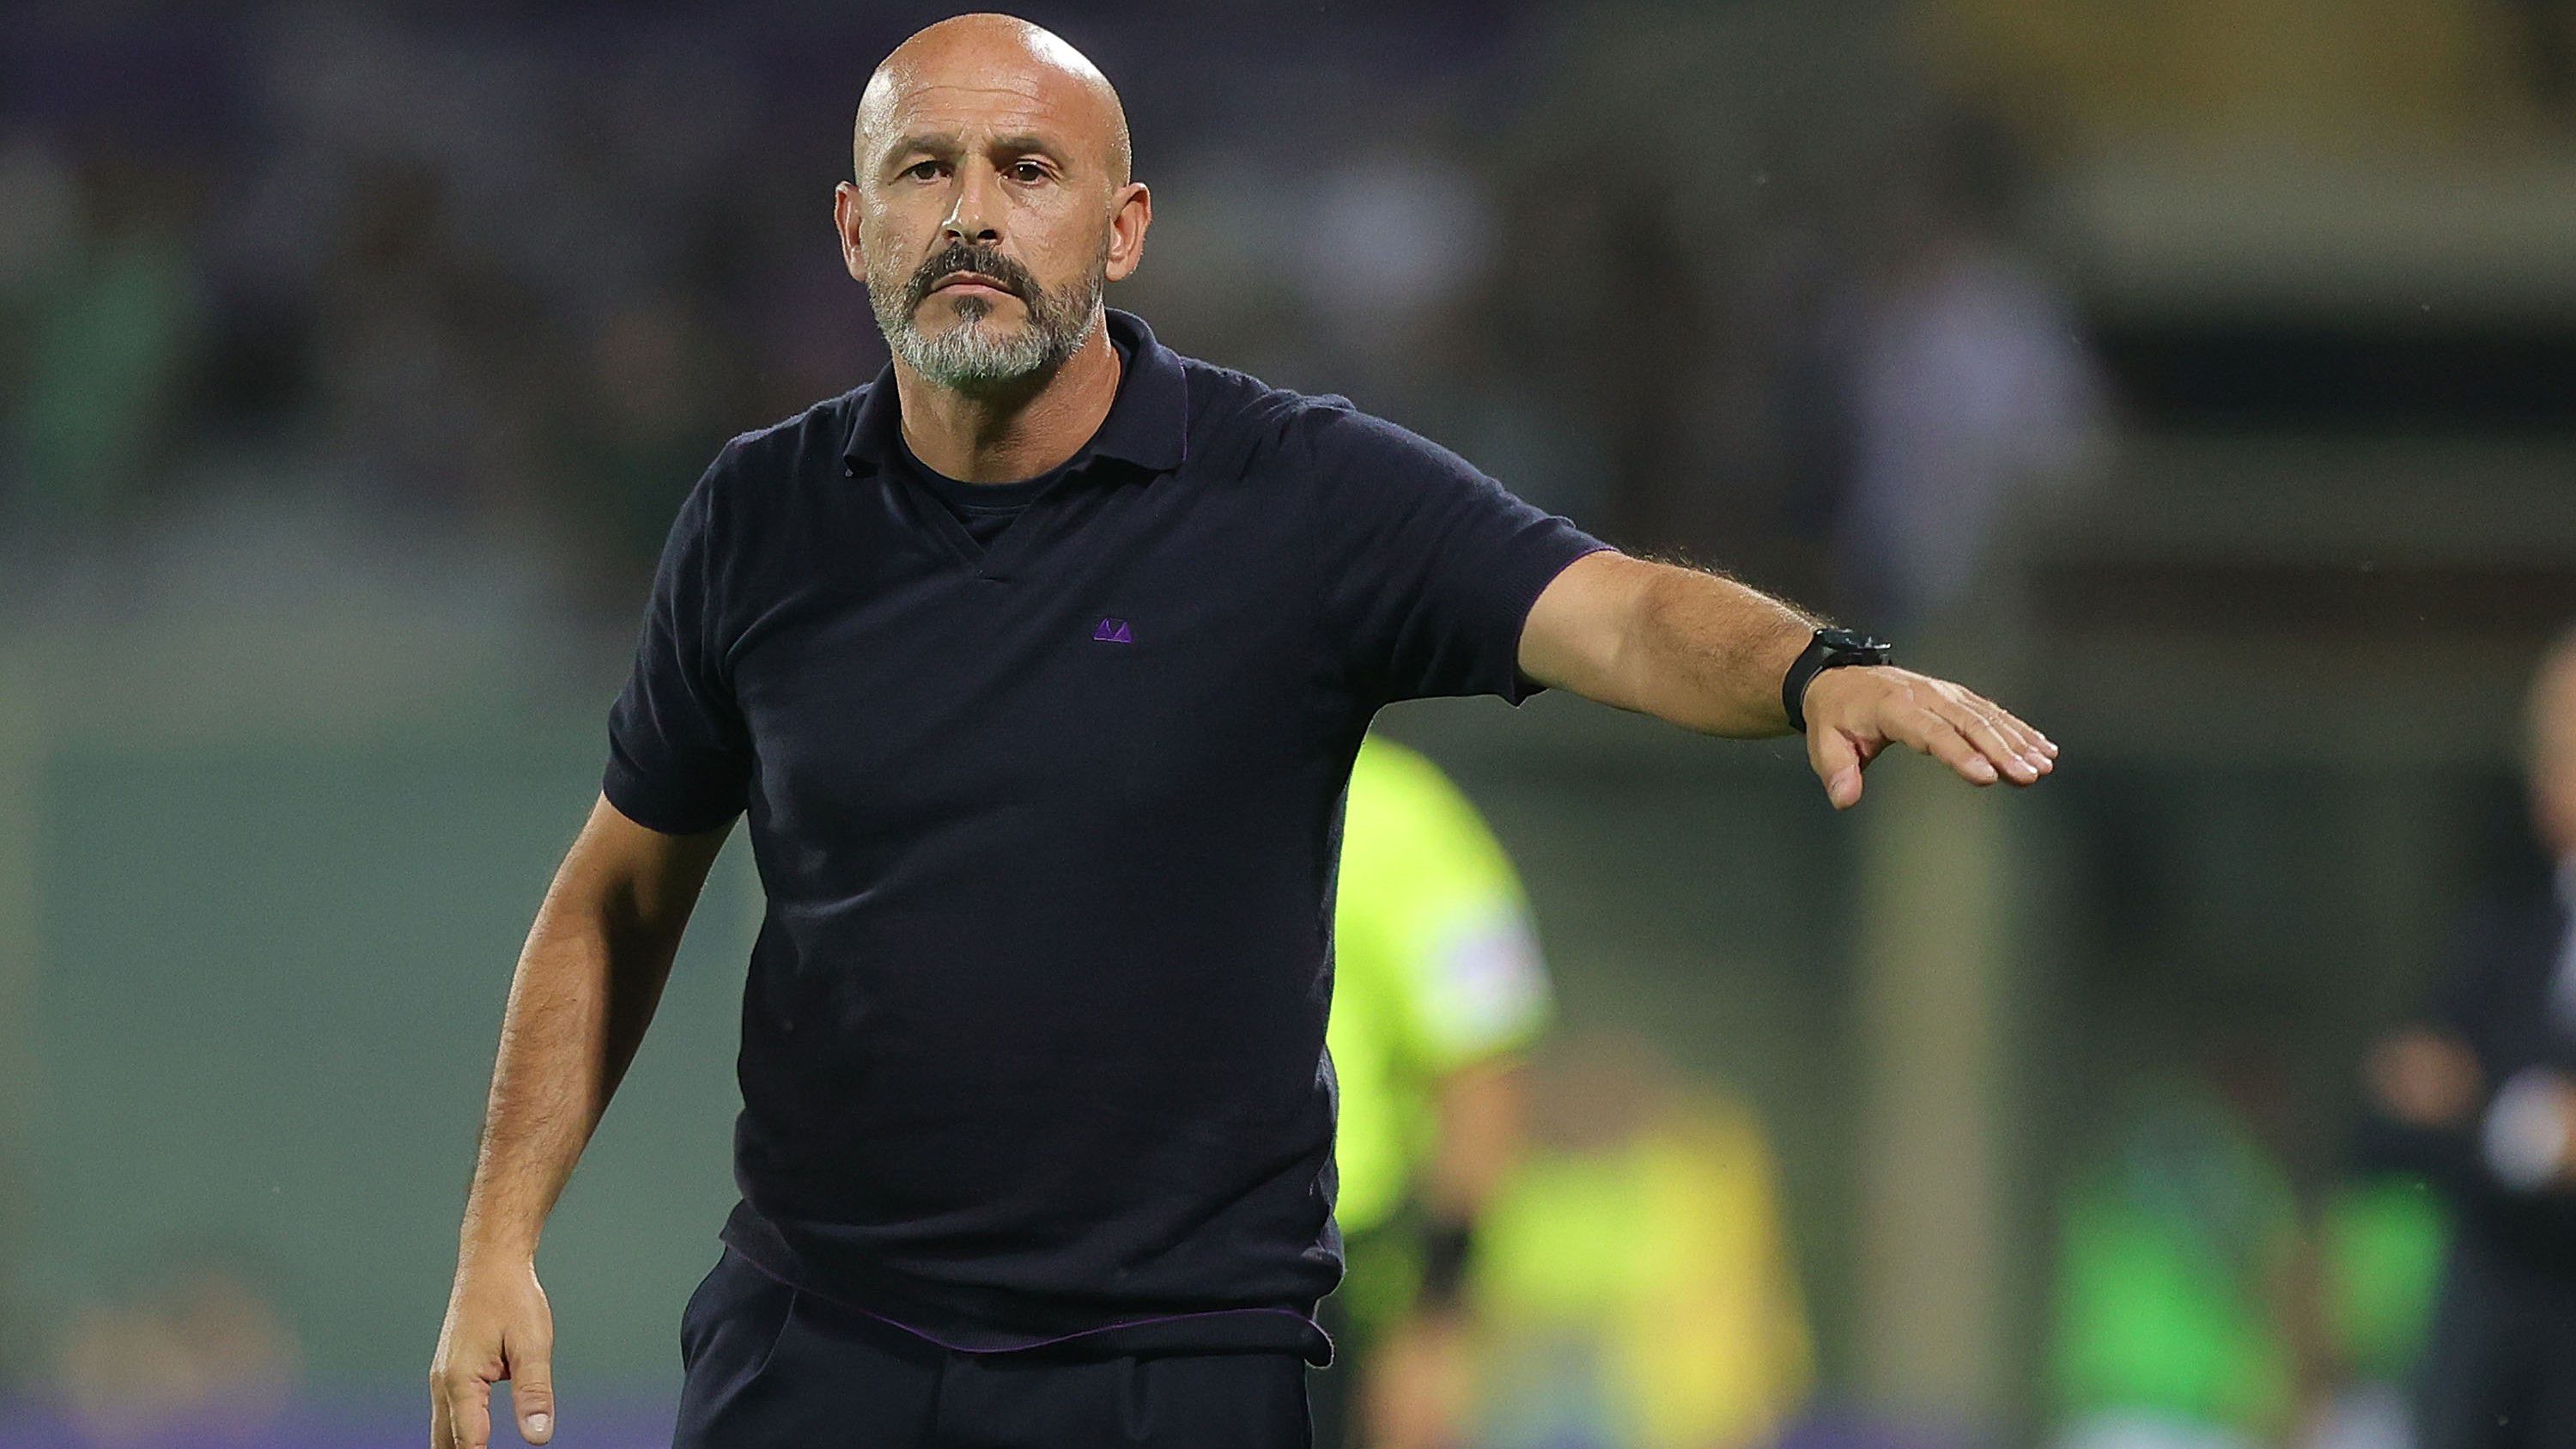 A Fiorentina vezetőedzője, Vincenzo Italiano szerint nincs jelentősége annak, hogy a Ferencváros többet pihent a csütörtöki Konferencia Liga-meccs előtt